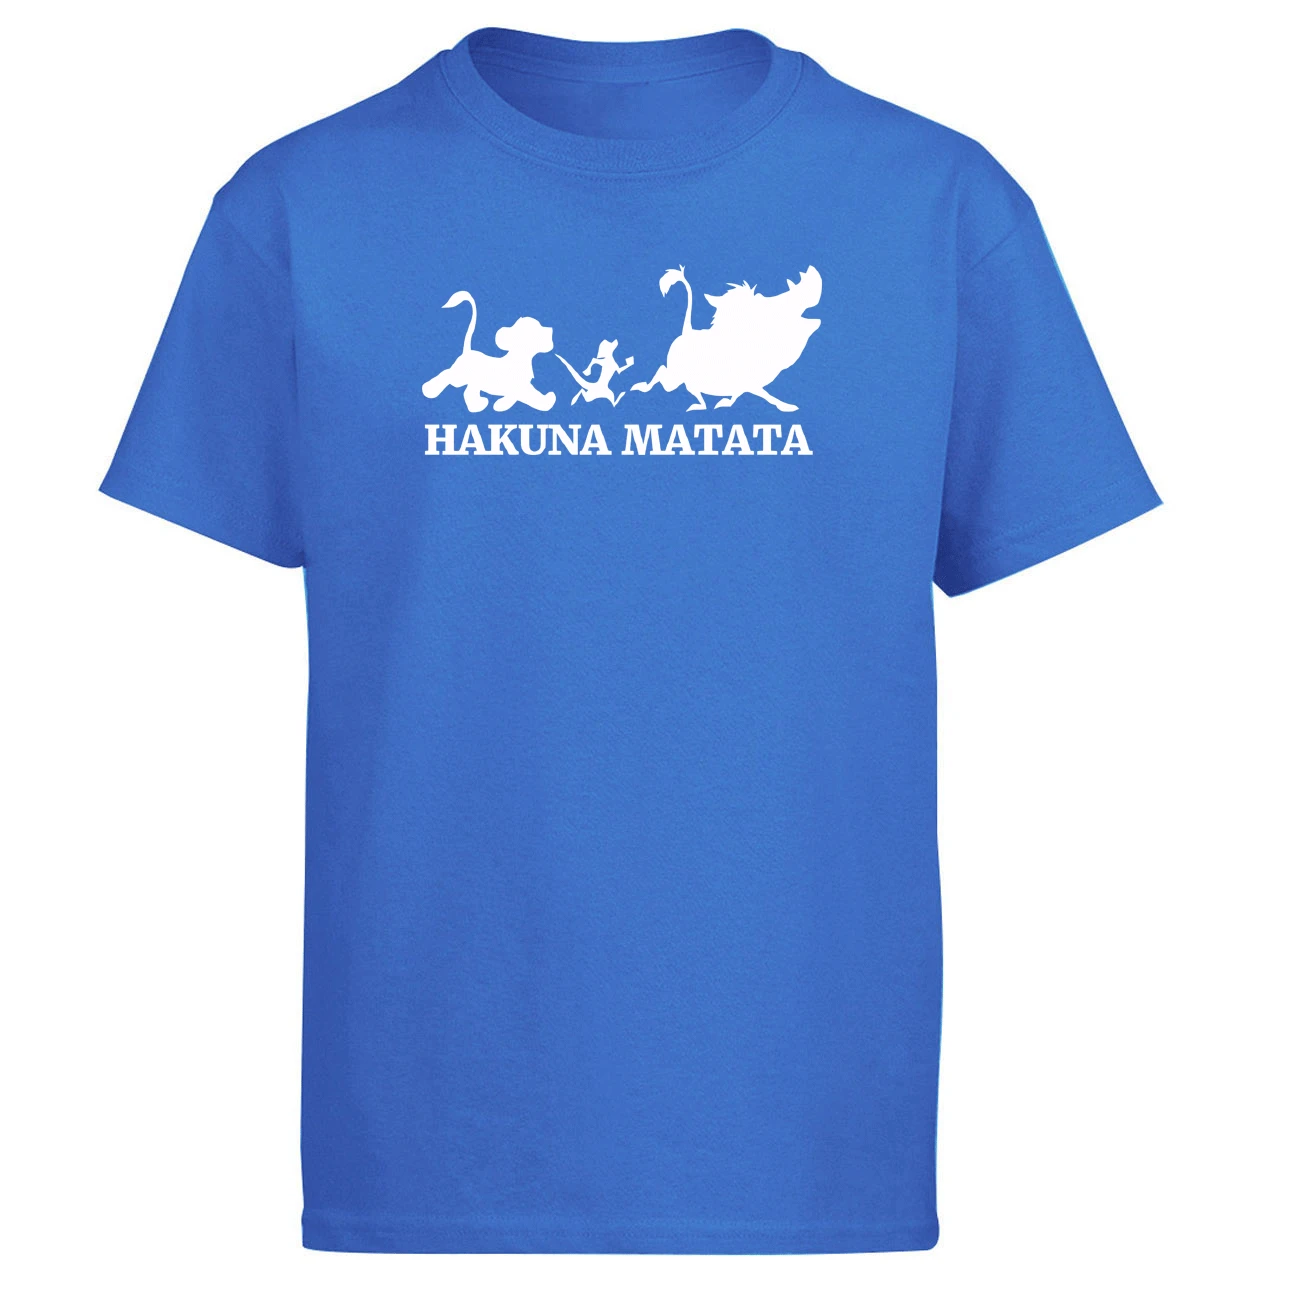 Hakuna Matata Король Лев футболка мужские летние топы Футболка Simba друг Пумба Тимон футболки черный белый серый короткий рукав - Цвет: Blue 5